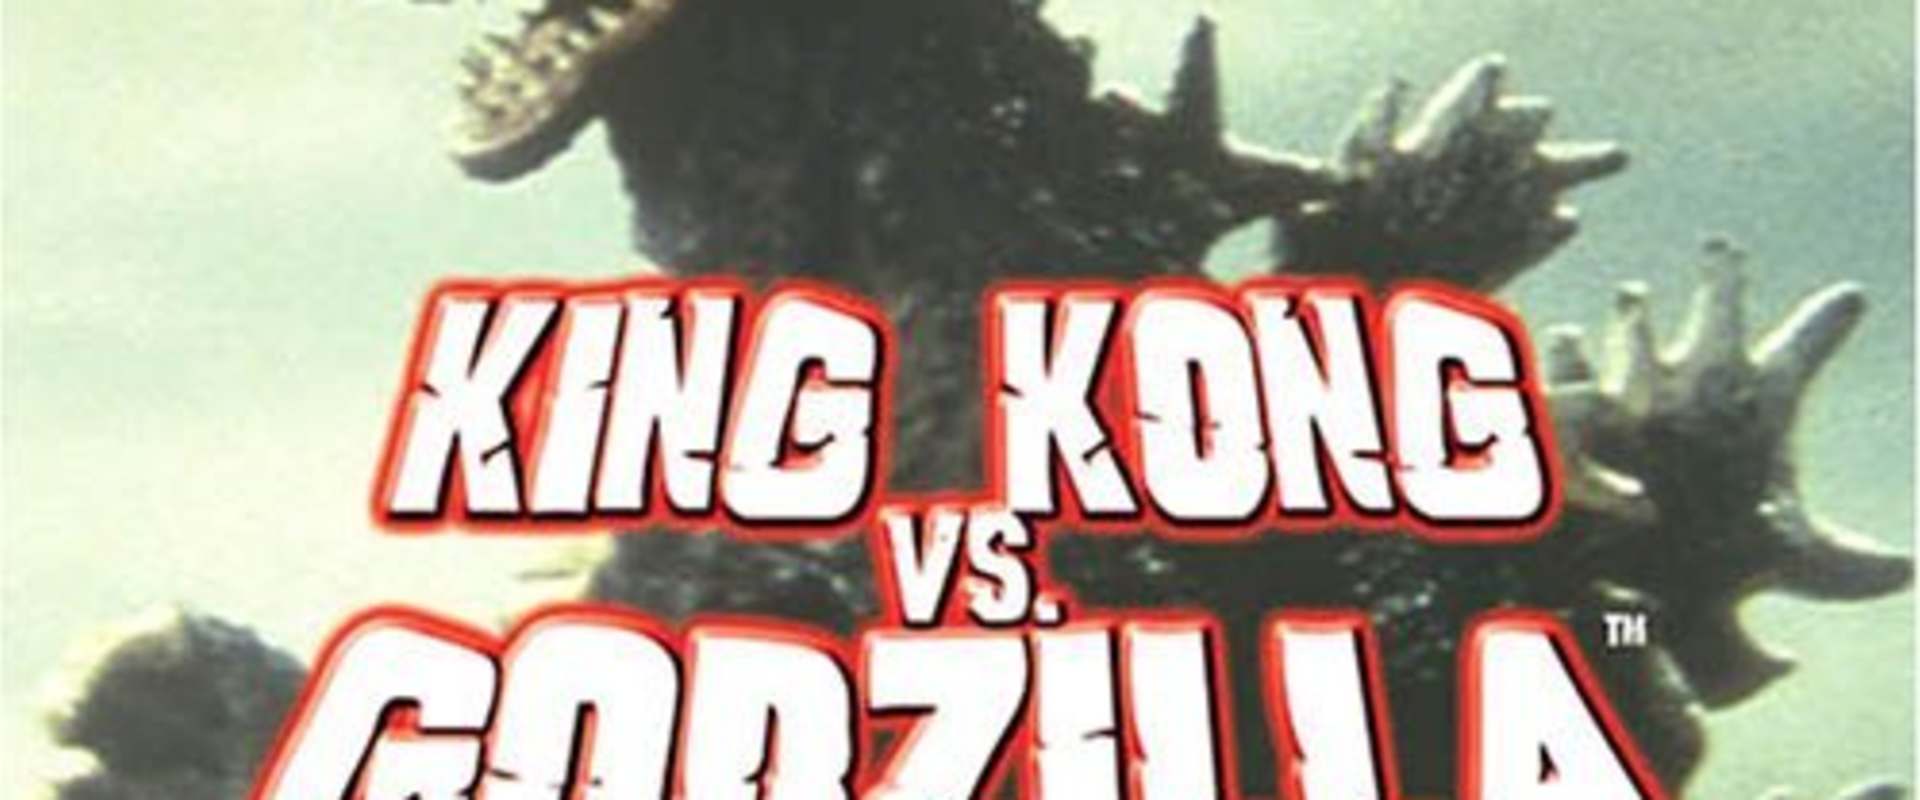 King Kong vs. Godzilla background 1